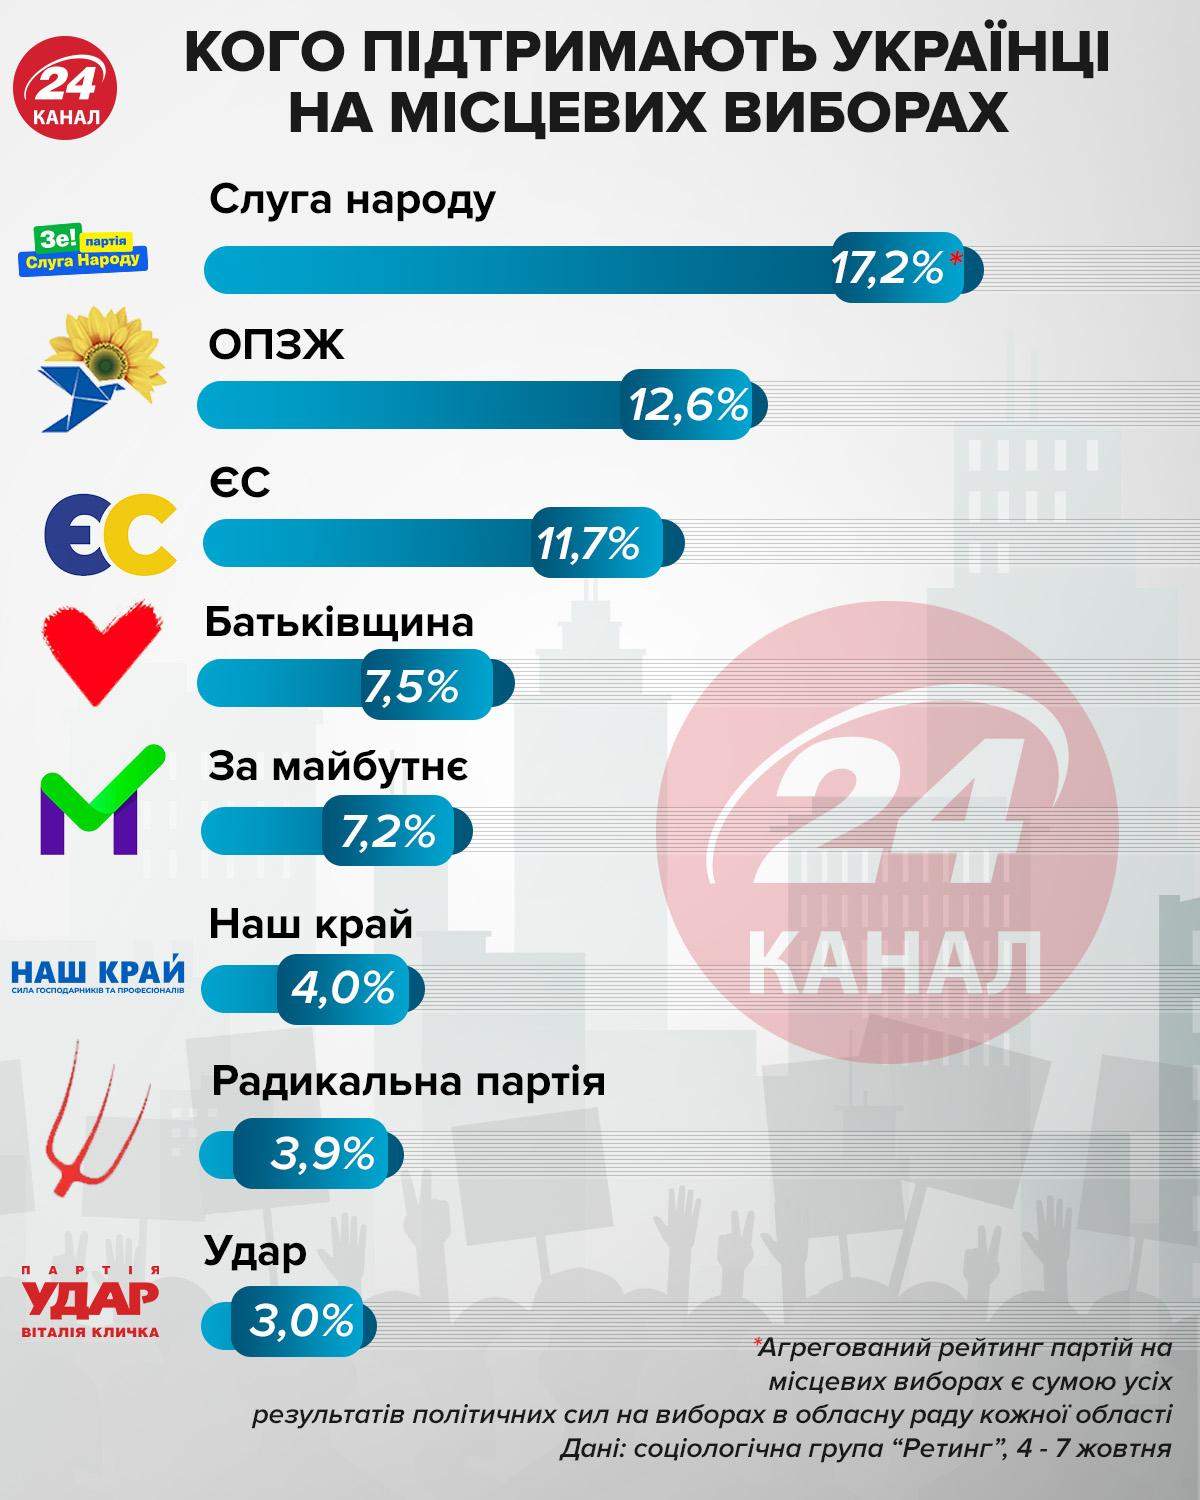 Поддержка партий на местных выборах инфографика 24 канал